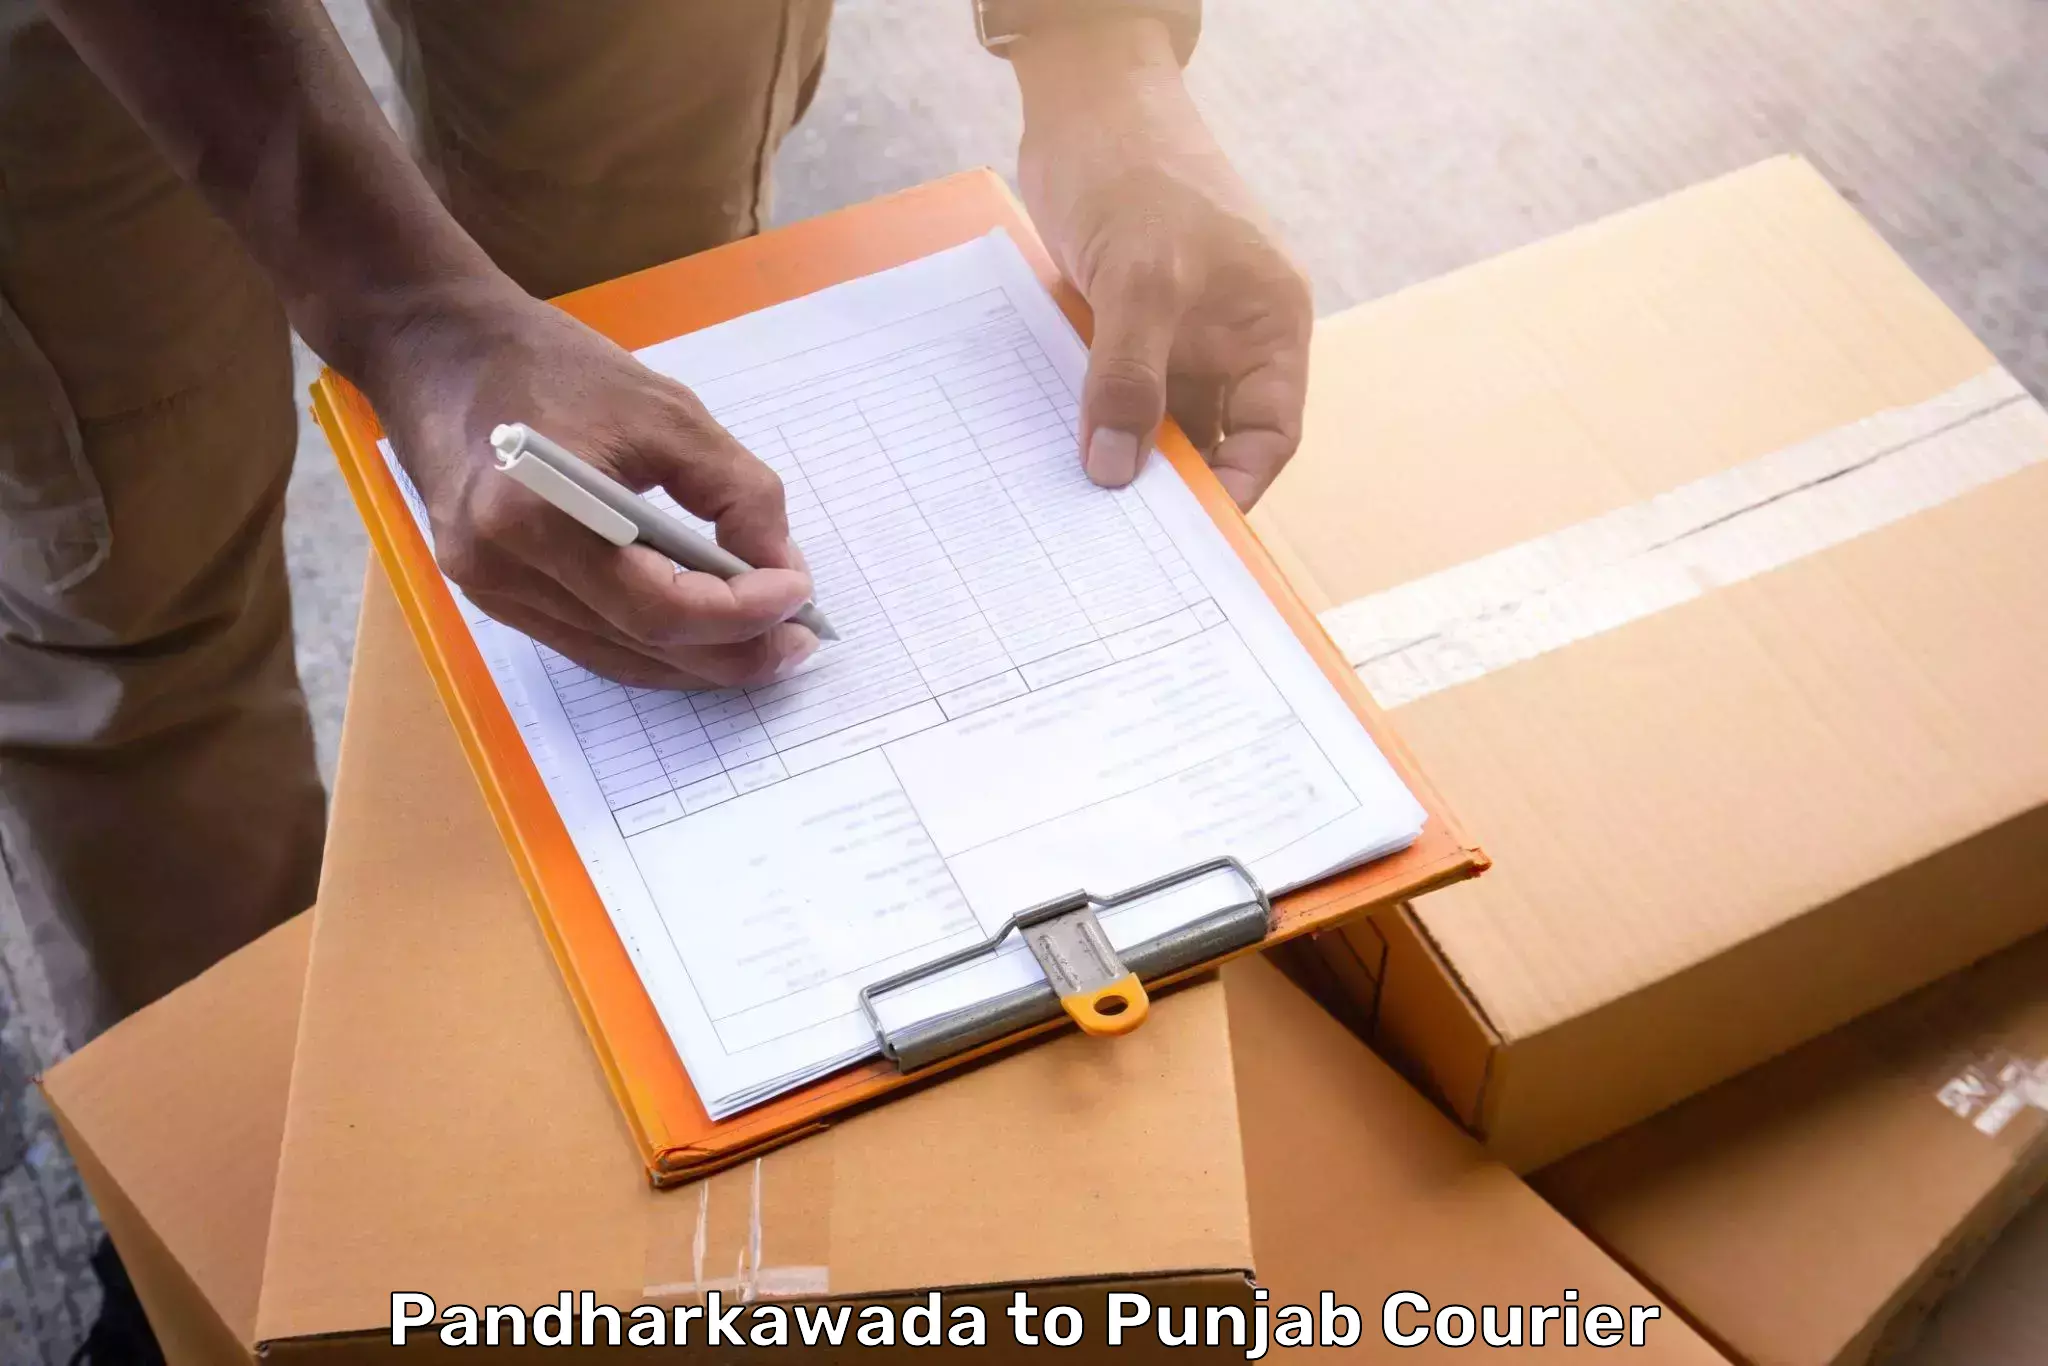 Baggage shipping experts Pandharkawada to Goindwal Sahib